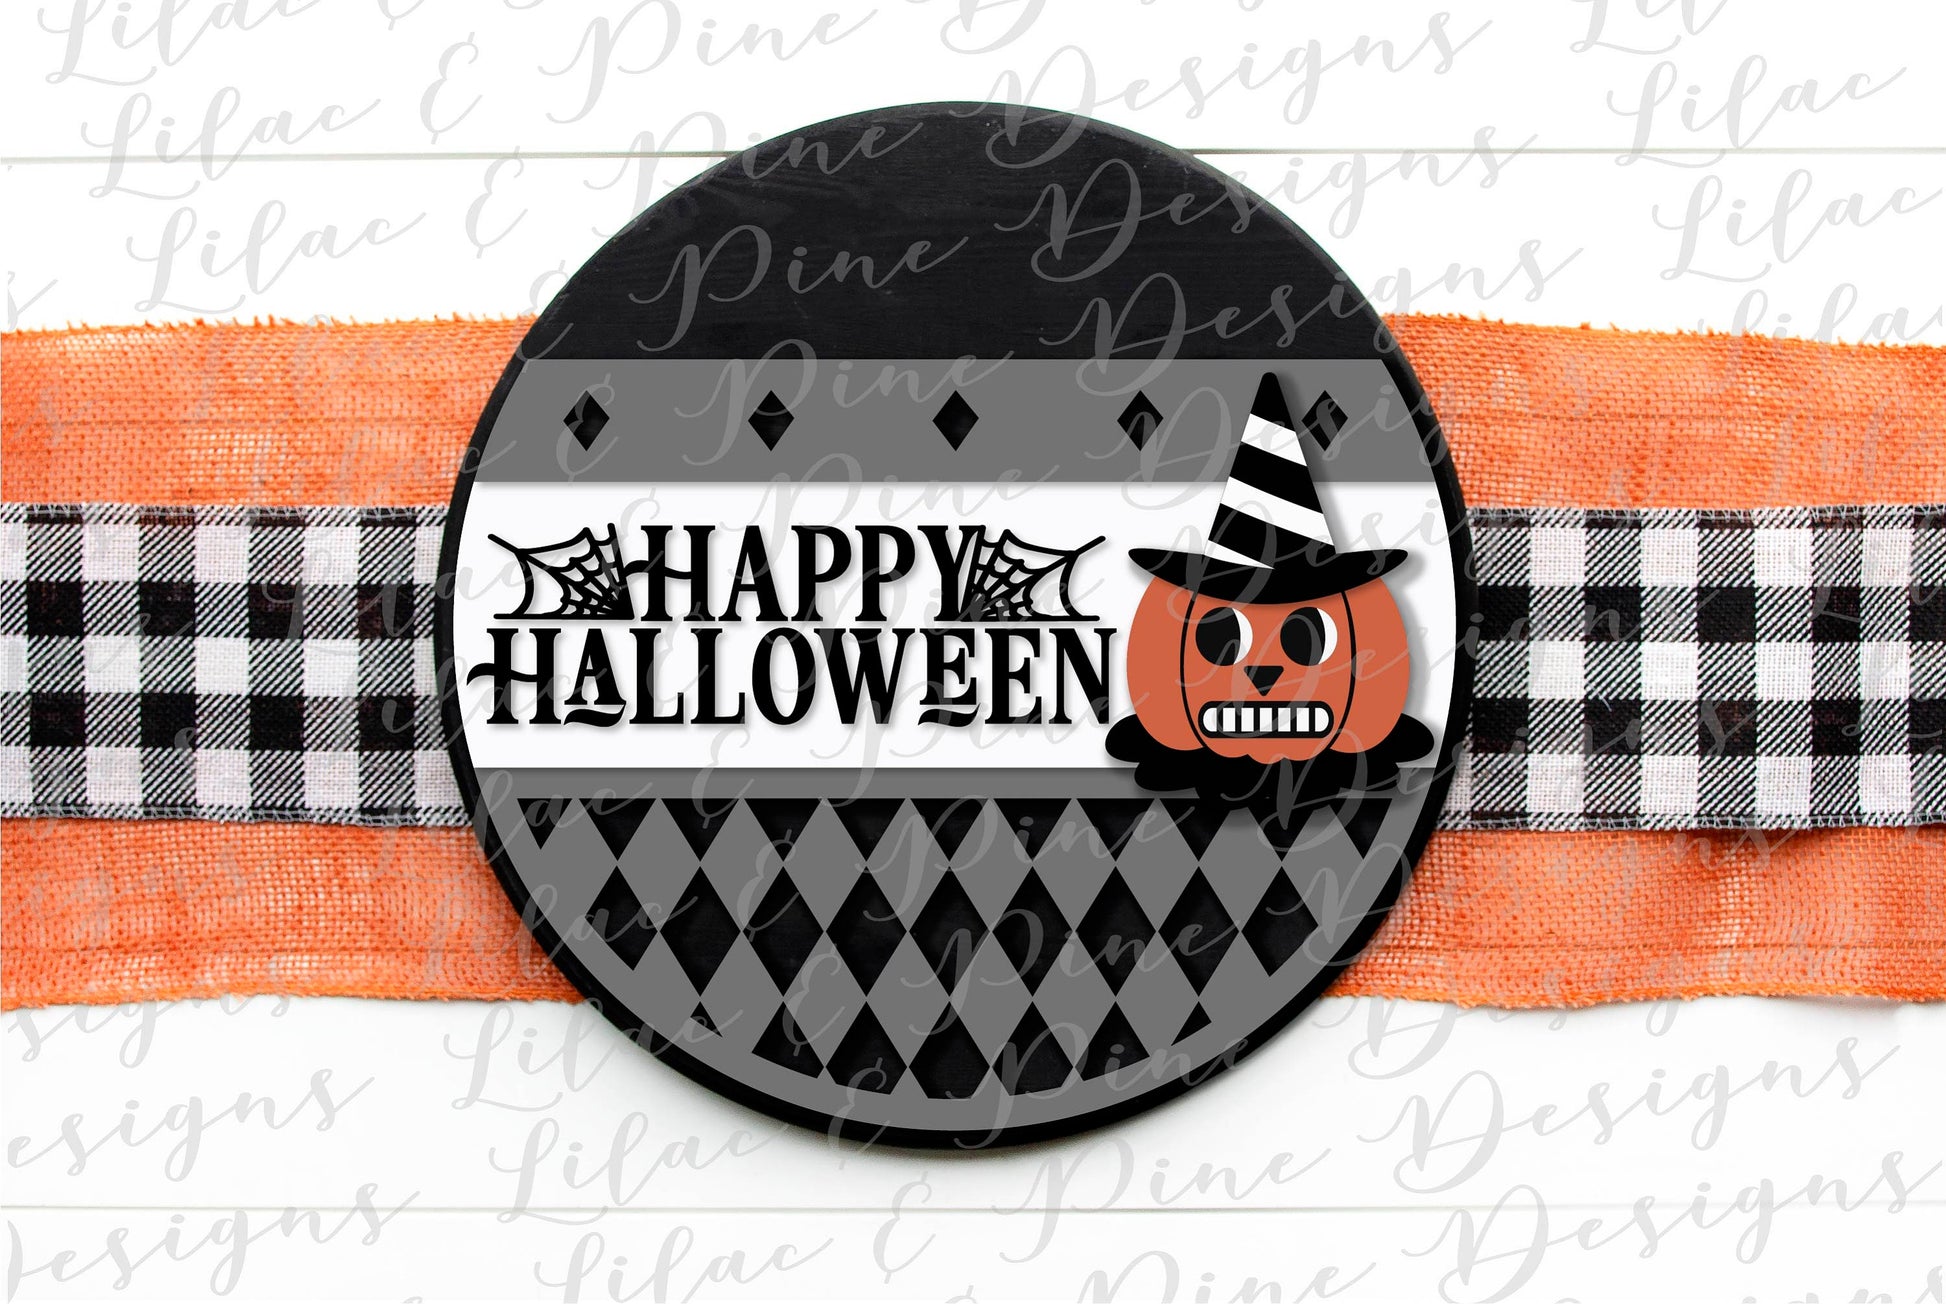 Vintage Halloween door hanger SVG, Vintage Jack o lantern SVG, Happy Halloween svg,  Halloween Welcome sign, laser cut file, Glowforge SVG